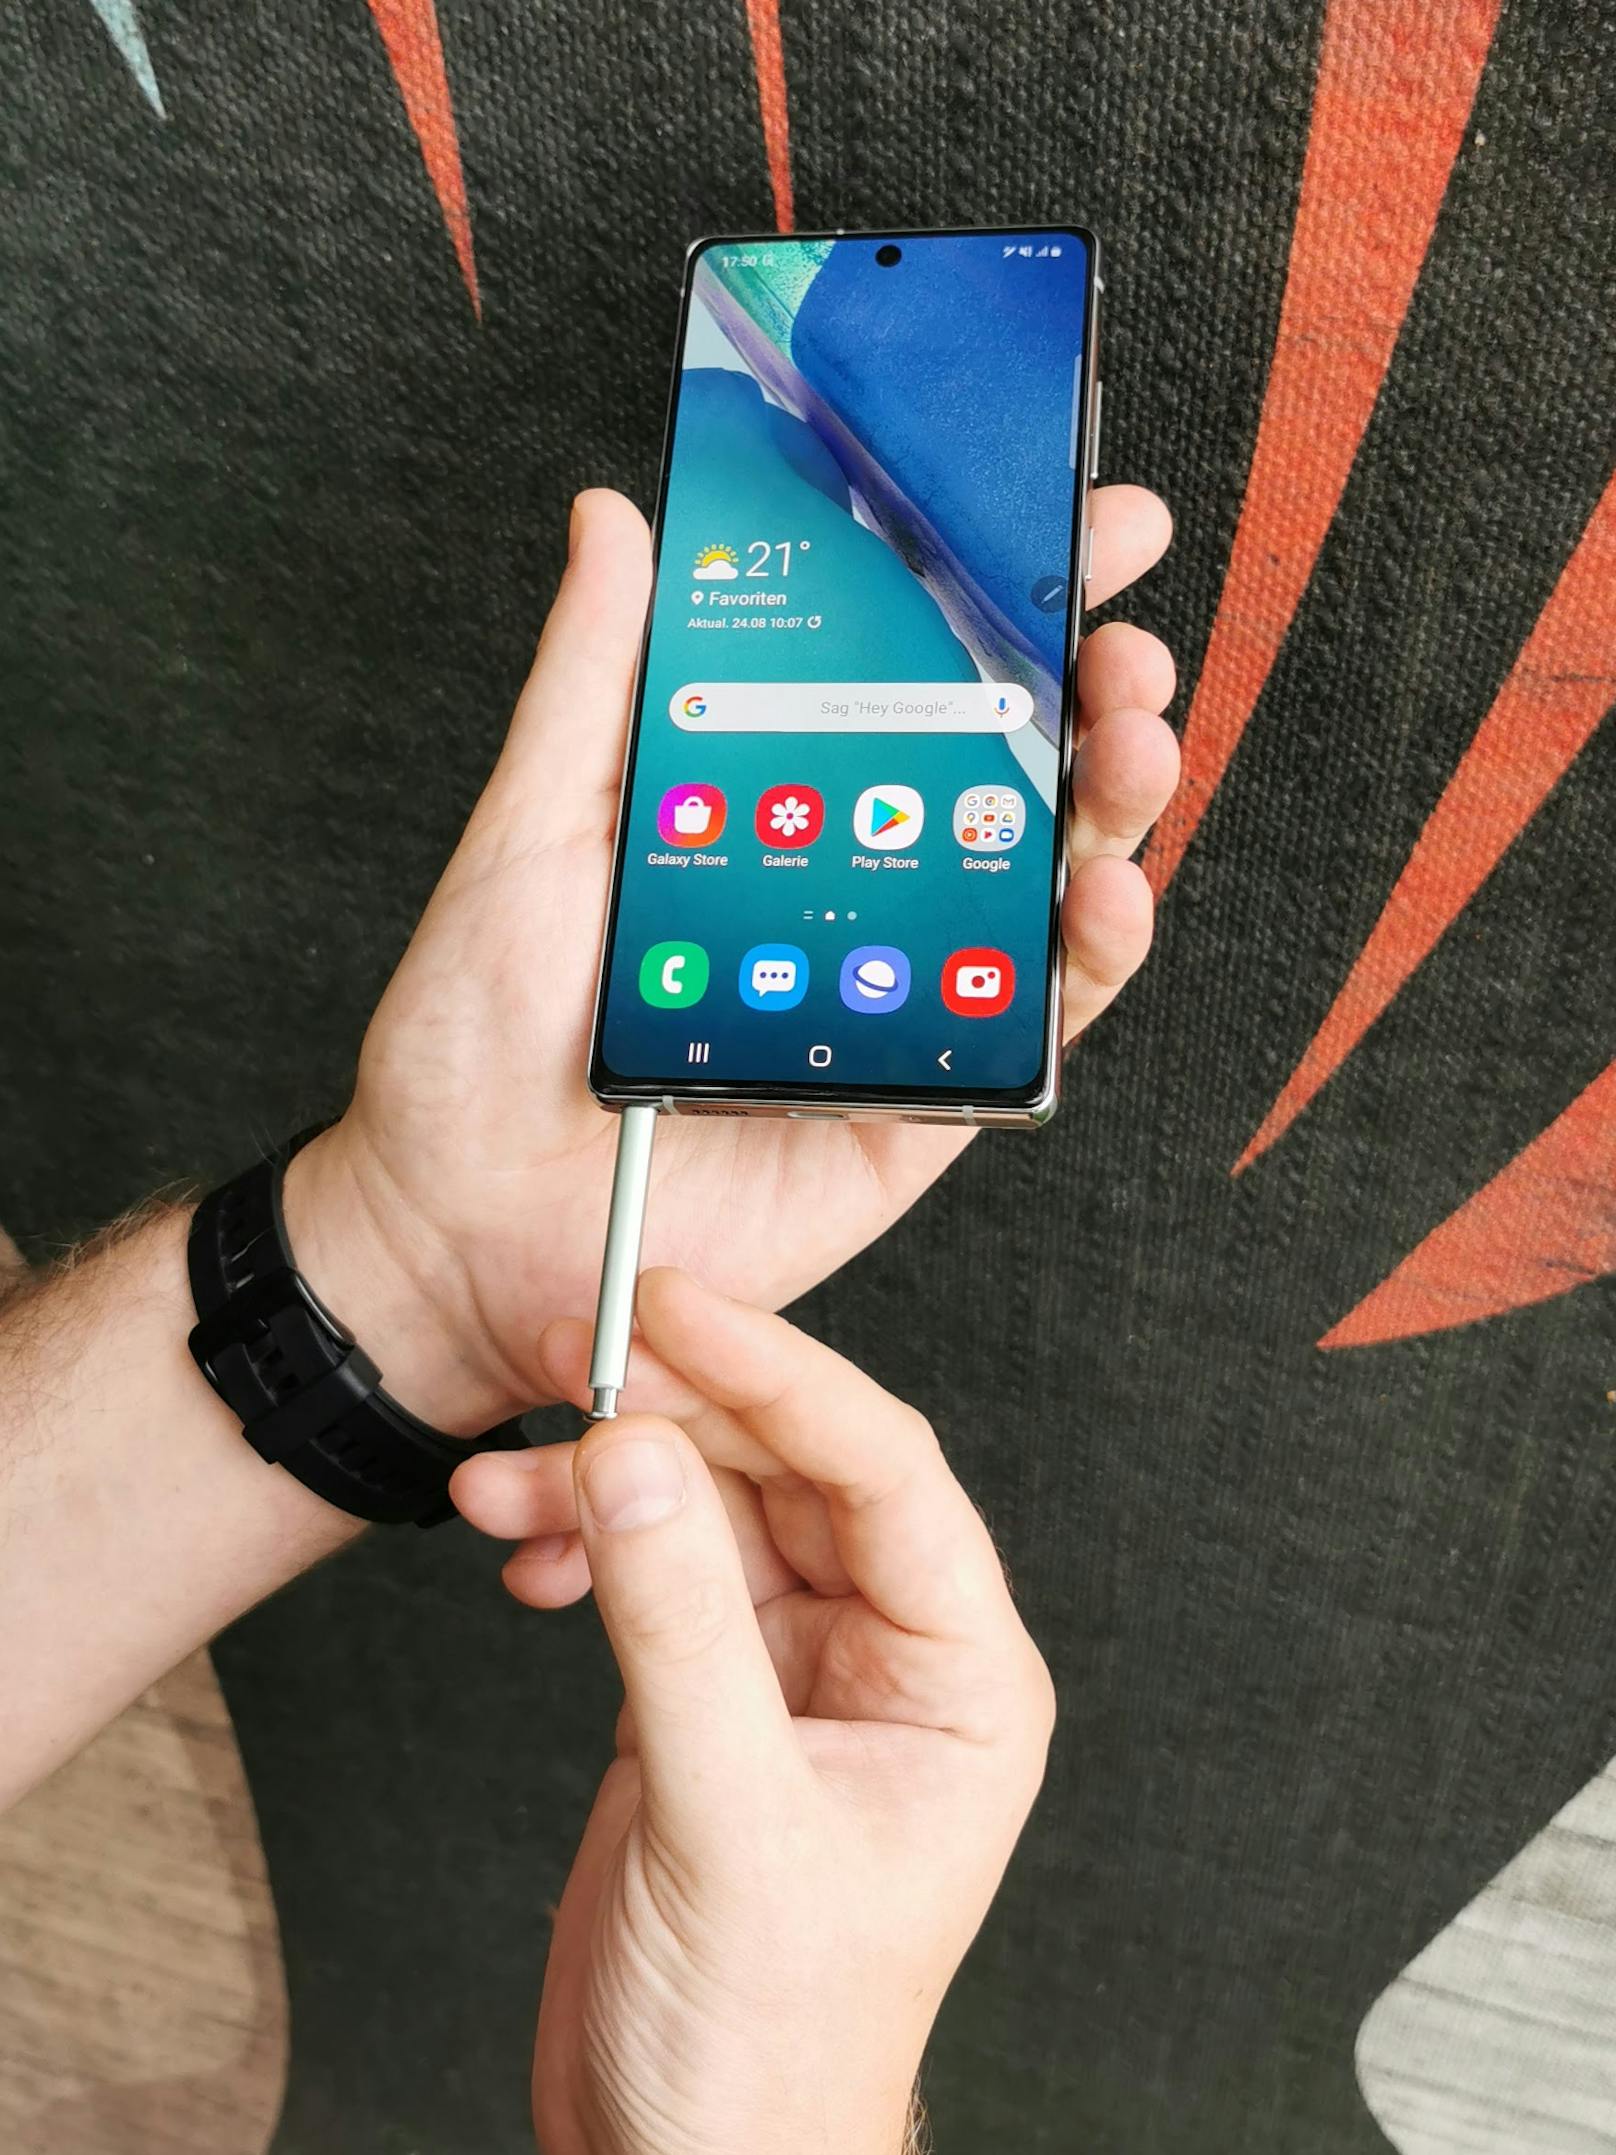 Wer auf eine schnellere S-Pen, einen flotteren Bildschirm und Superlativen bei Kamera und Technik verzichten kann, findet im Samsung Galaxy Note20 ein Ass statt einer Alternative zum Galaxy Note20 Ultra.